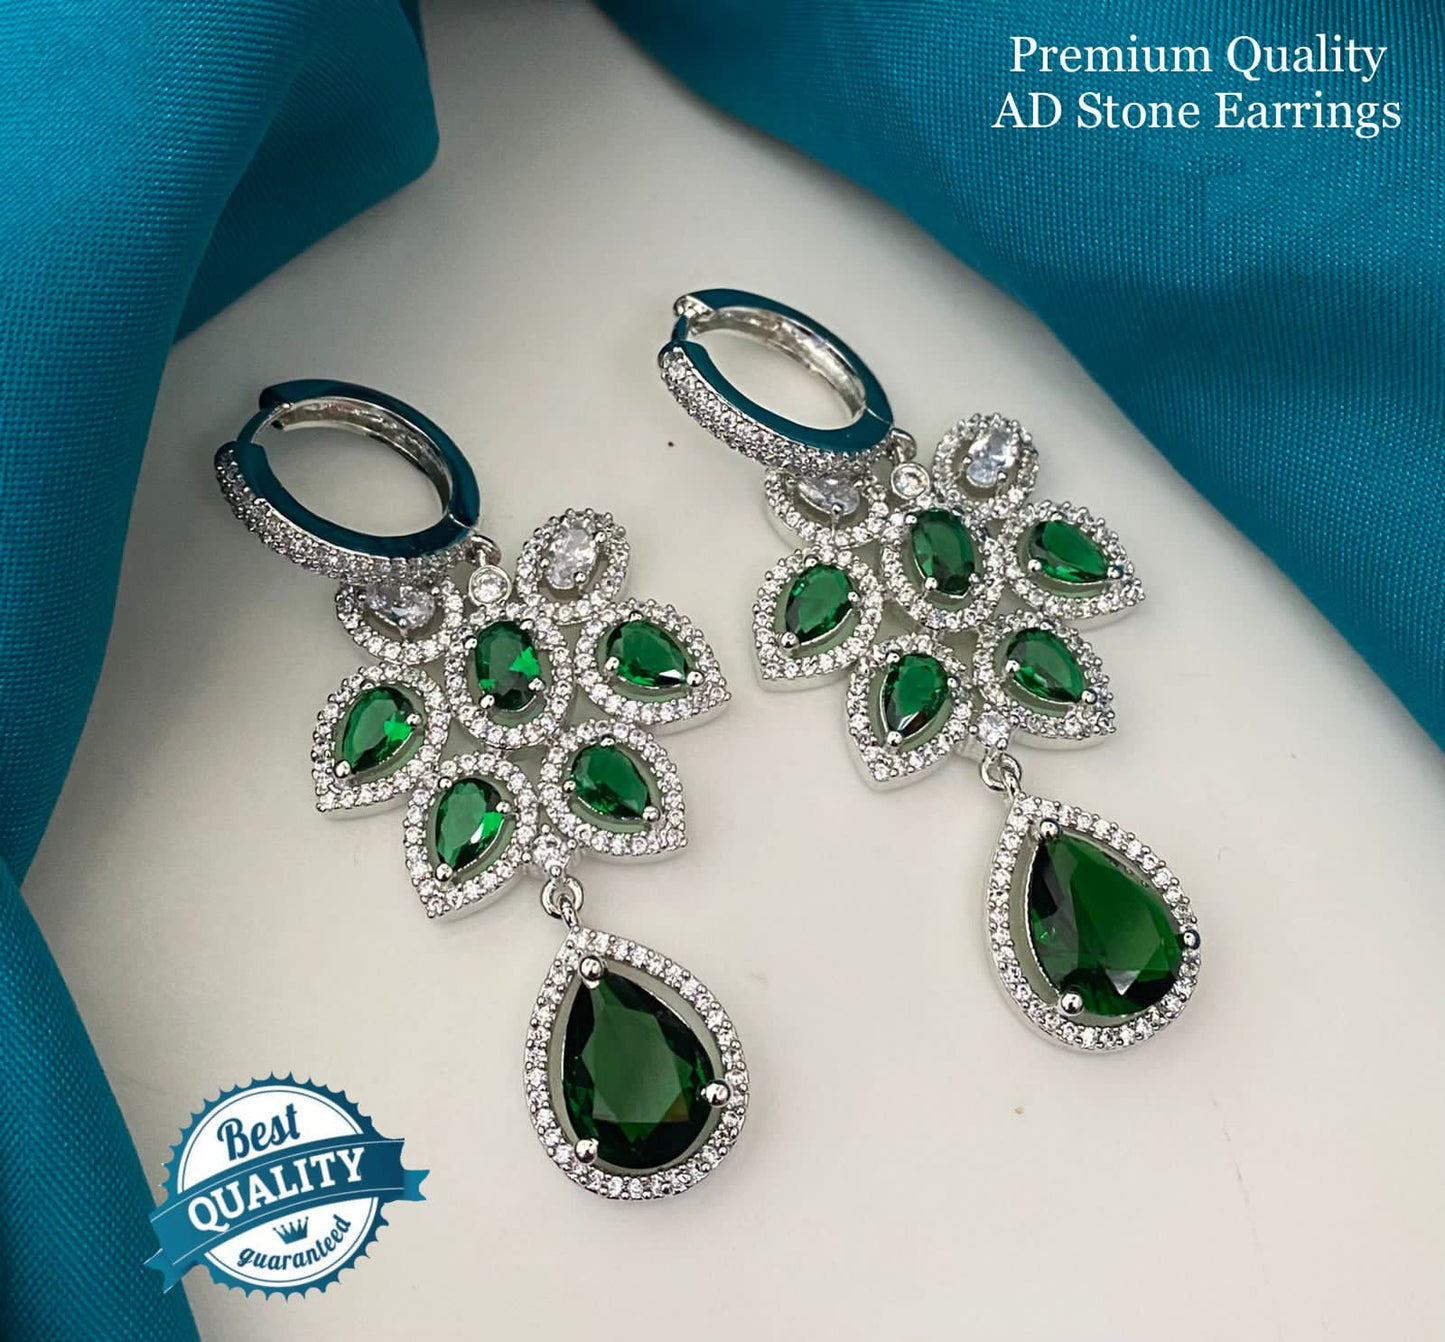 Best Quality American diamond earrings in gold Polish | CZ Ad dangler earrings | Cubic zirconia drop earrings silver | Crystal drop earrings